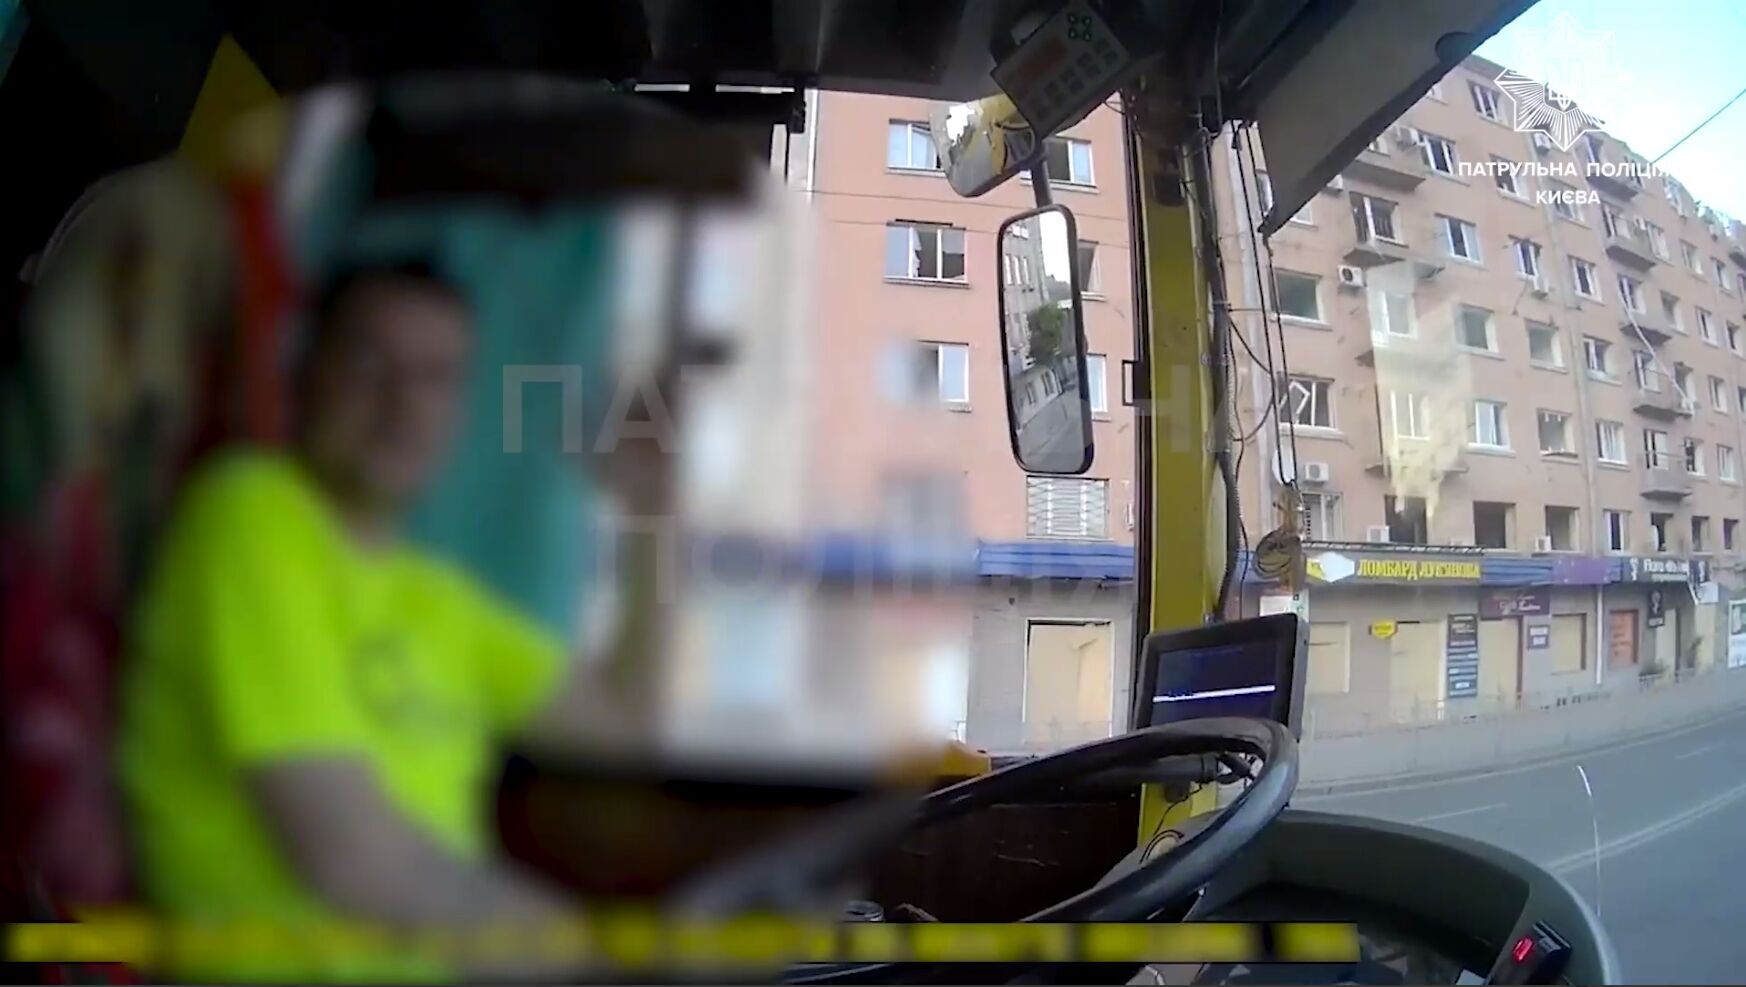 Выпил литр пива: в Киеве остановили водителя троллейбуса, у которого "Драгер" обнаружил 2,15 промилле алкоголя в крови. Видео